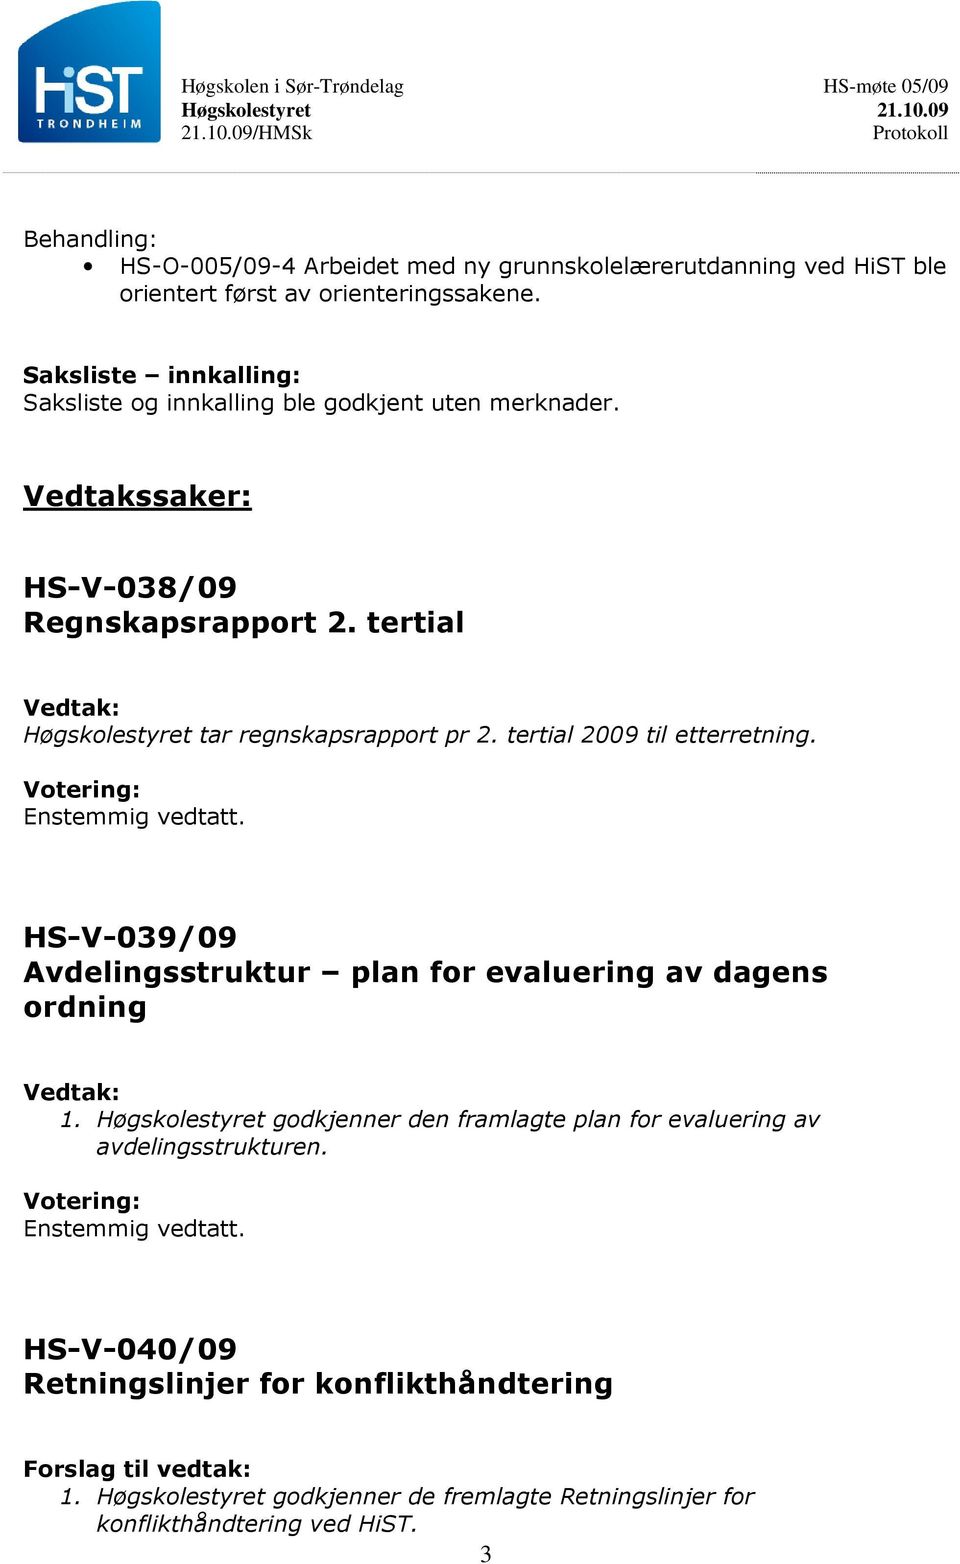 tertial tar regnskapsrapport pr 2. tertial 2009 til etterretning. HS-V-039/09 Avdelingsstruktur plan for evaluering av dagens ordning 1.